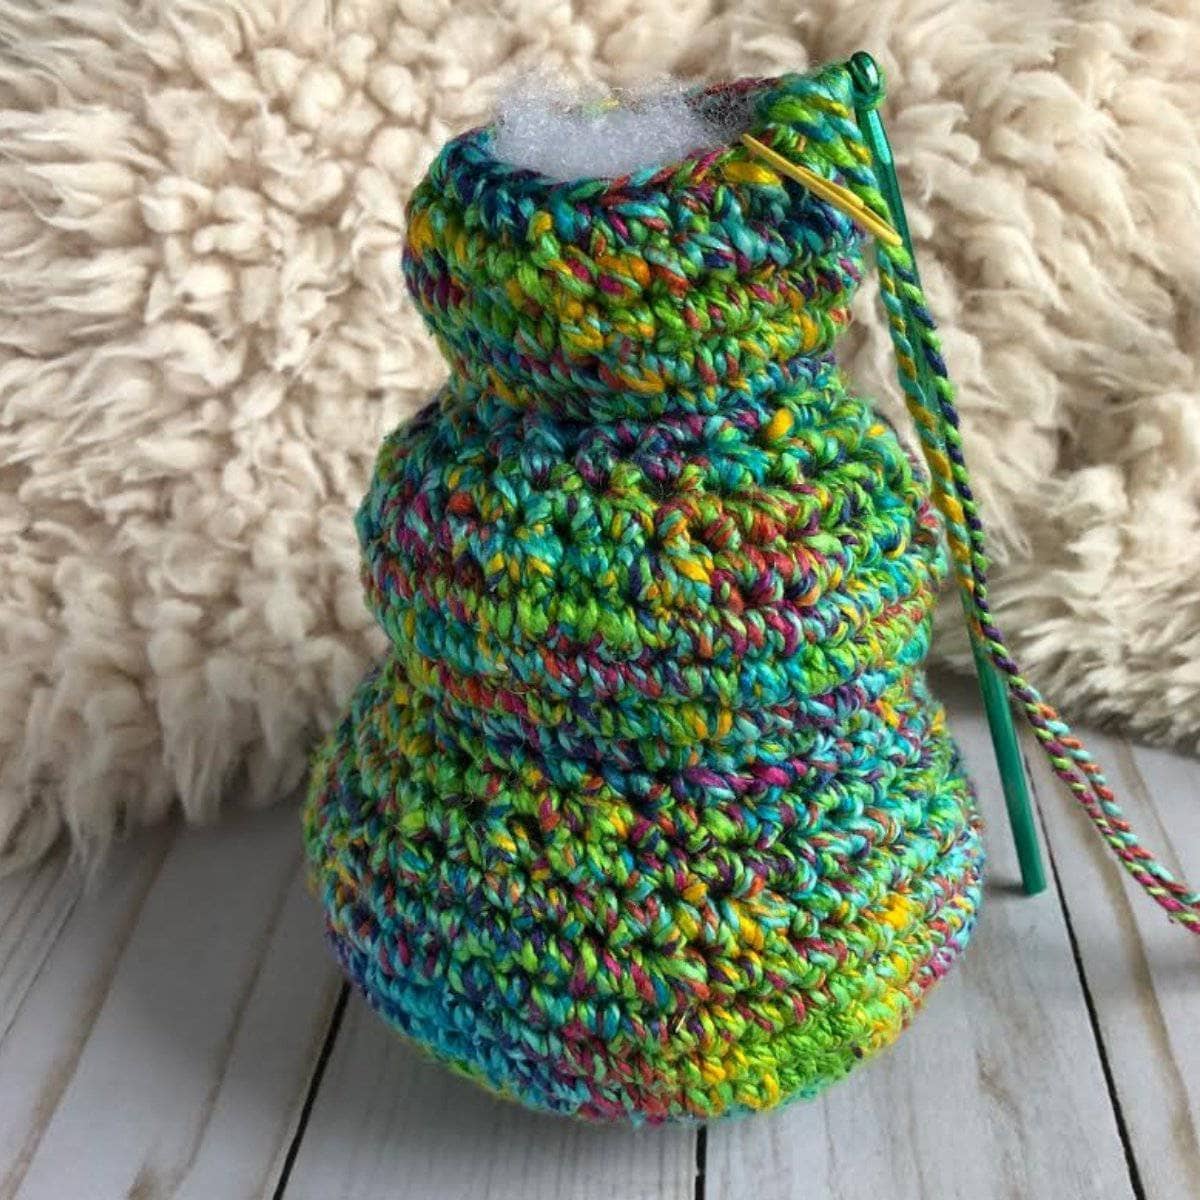 O'Whimsical Christmas Tree Crochet Kit – Darn Good Yarn